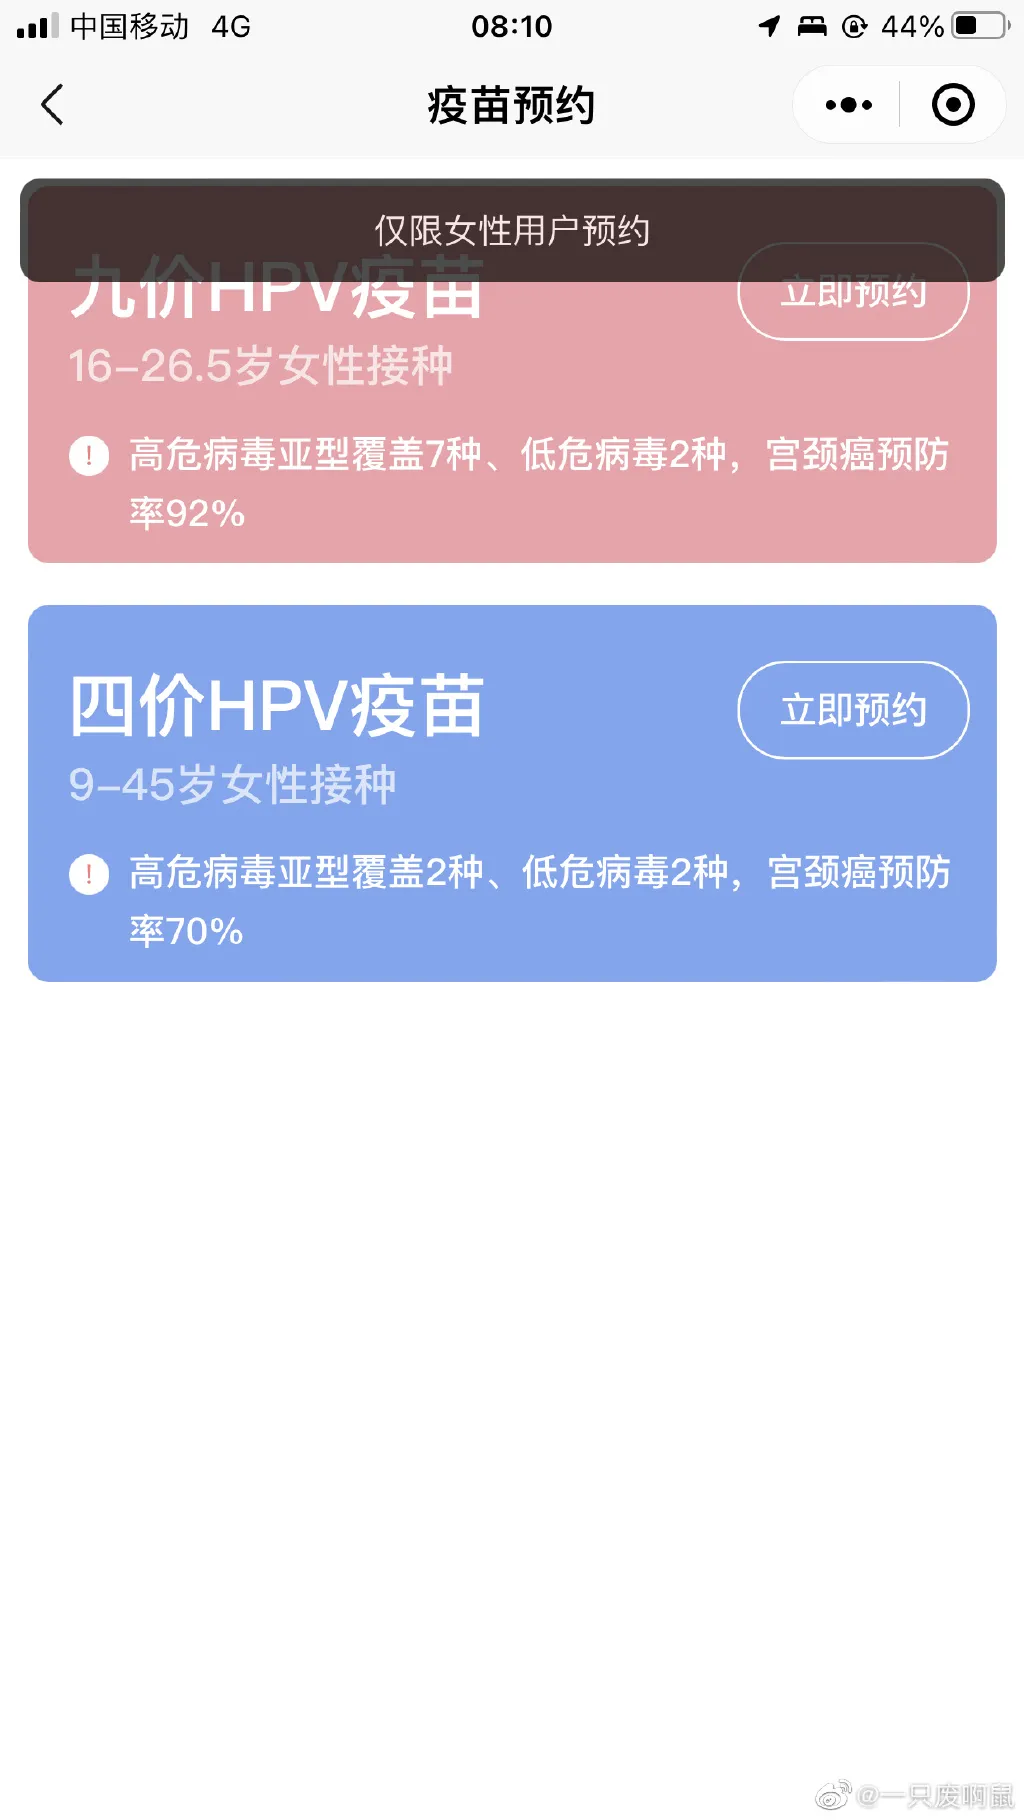 西安九价 陕西4月1日8时起可预约HPV疫苗